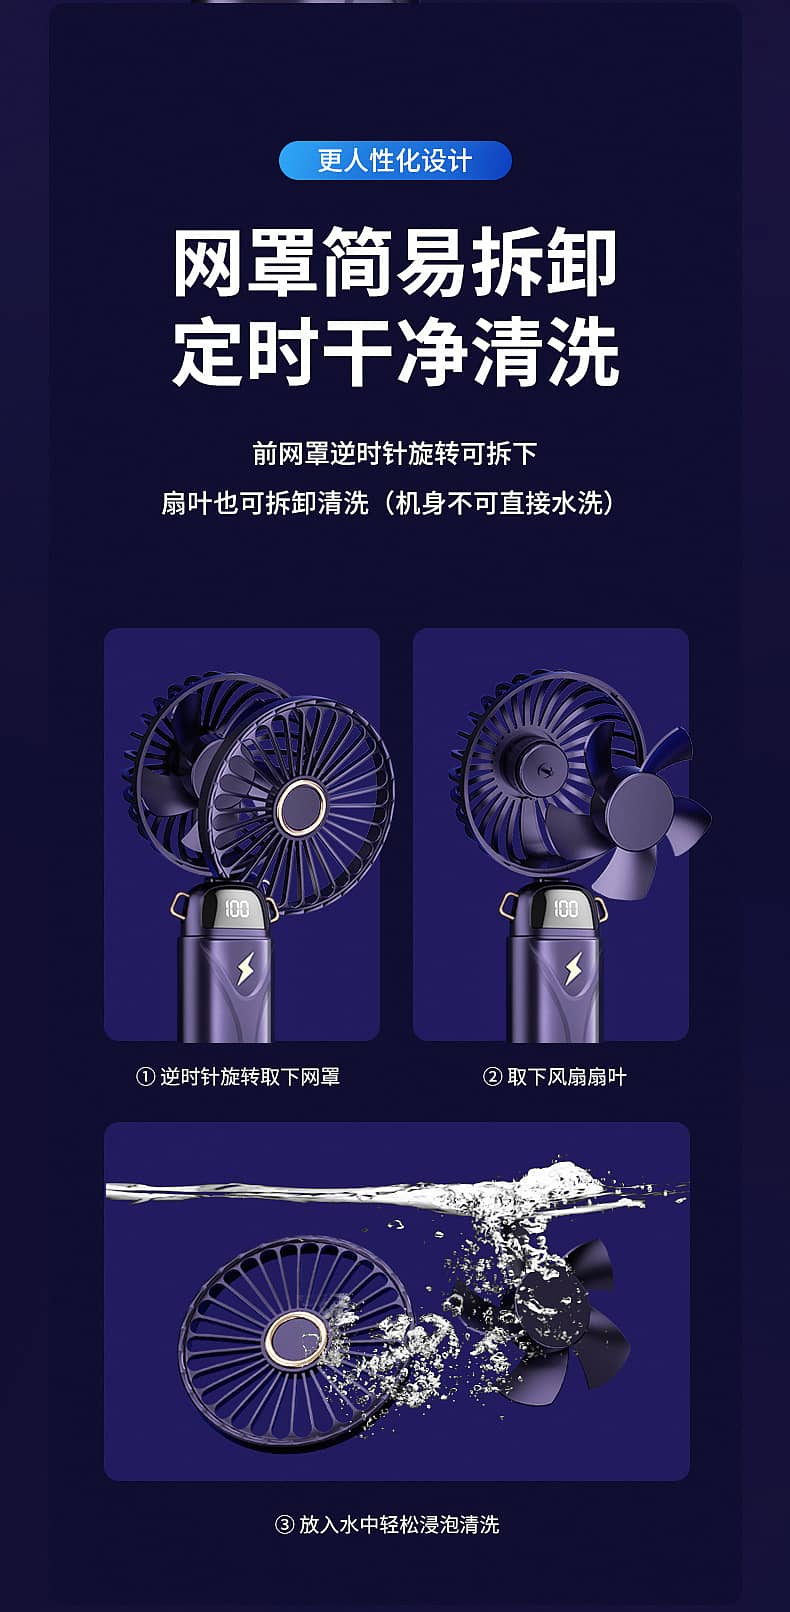 Mini Fan with Fan Digital Display (whole sale rate) 3